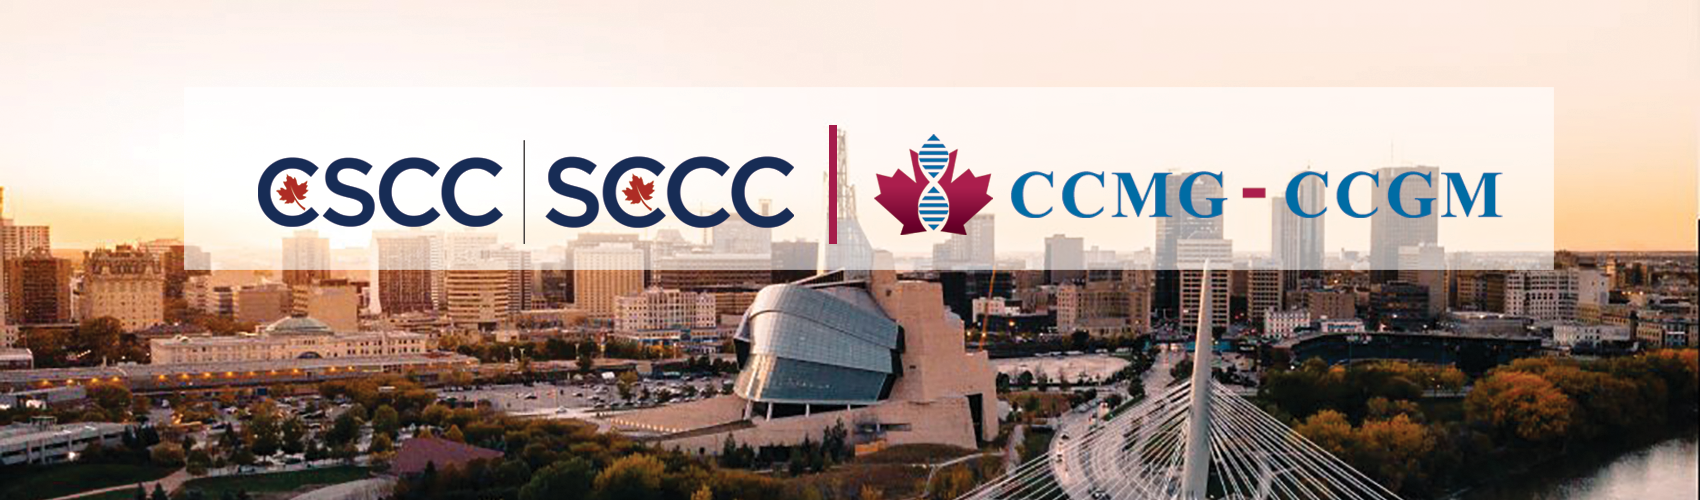 cscc_ccmg_logo_bilingual